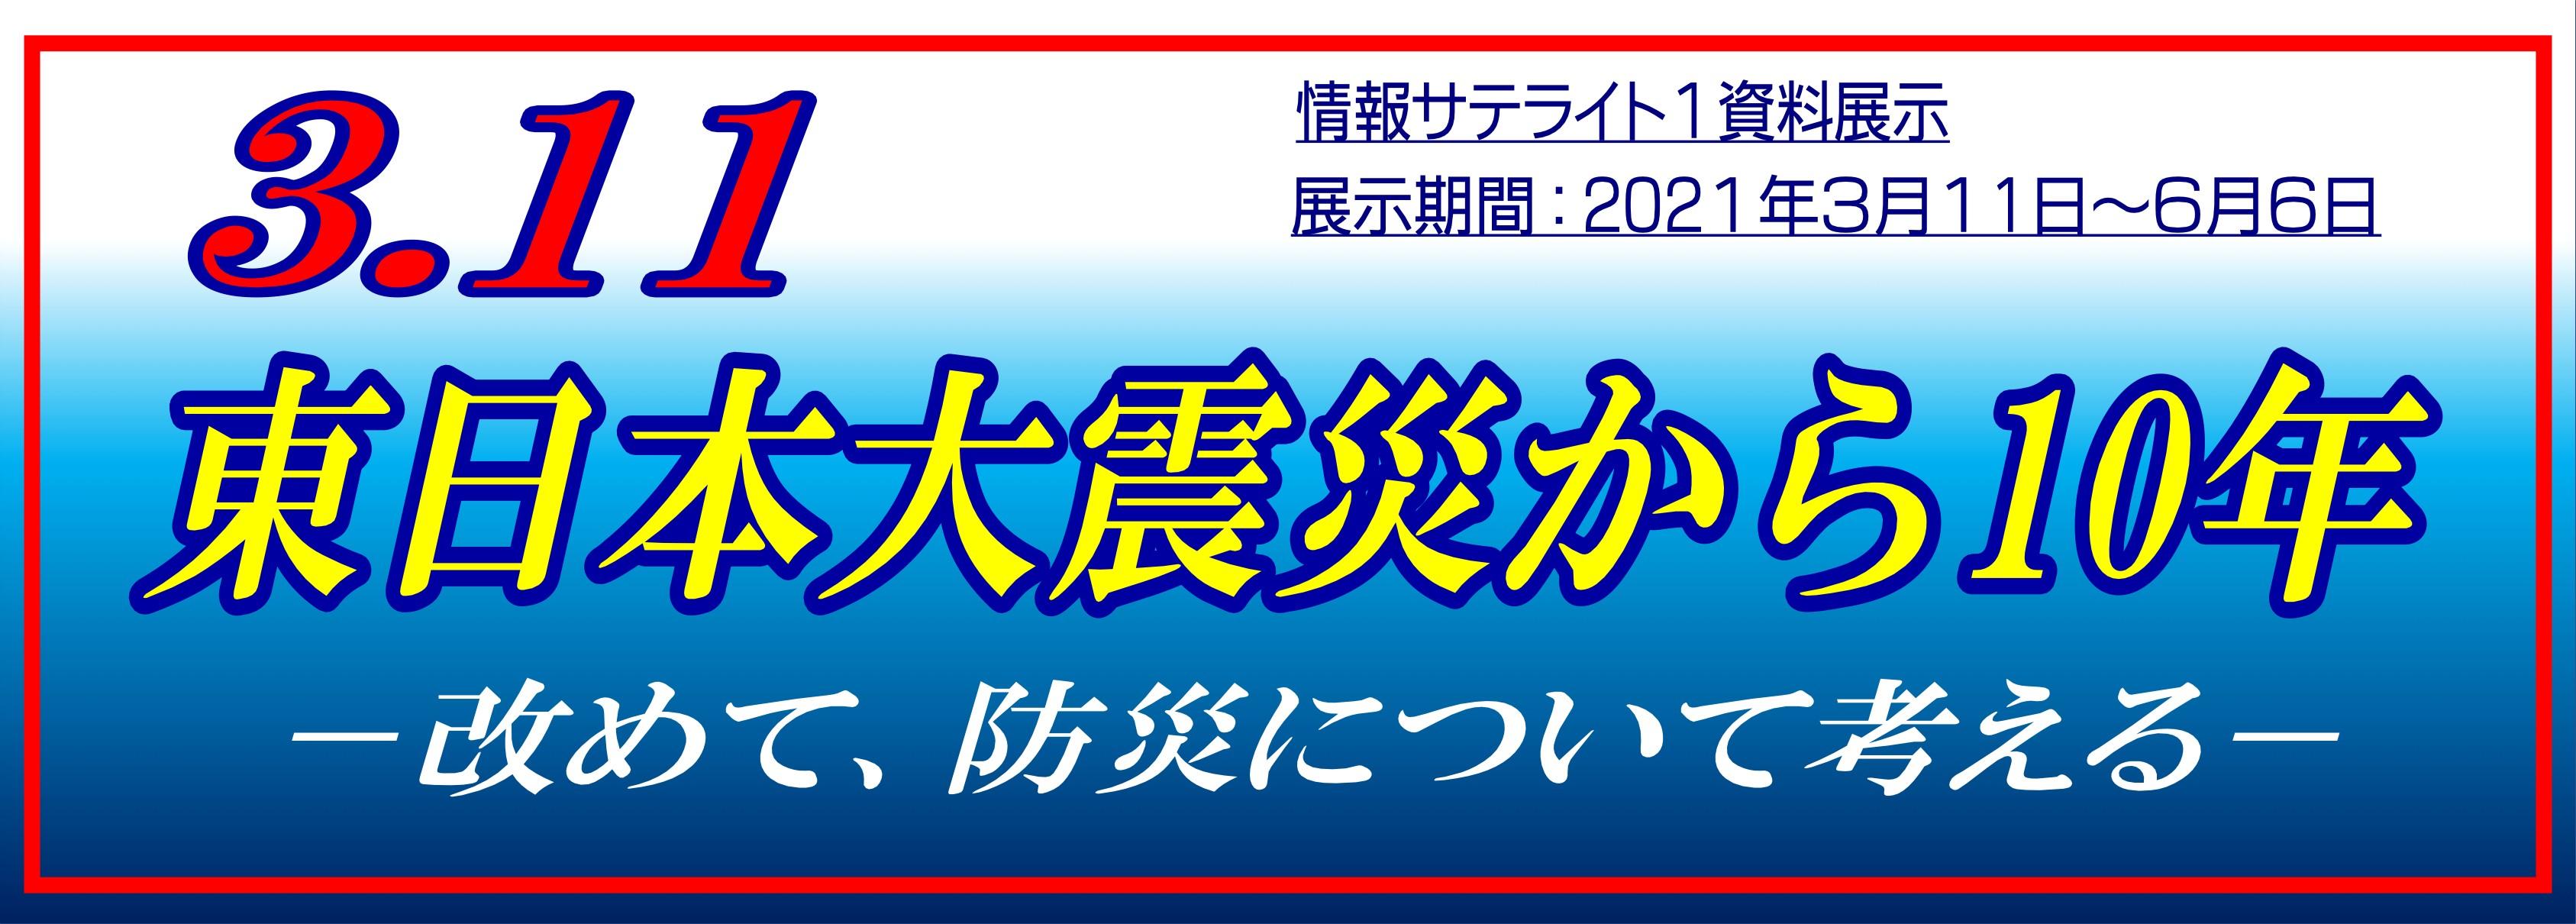 情報サテライト1資料展示「3.11東日本大震災から10年」タイトル